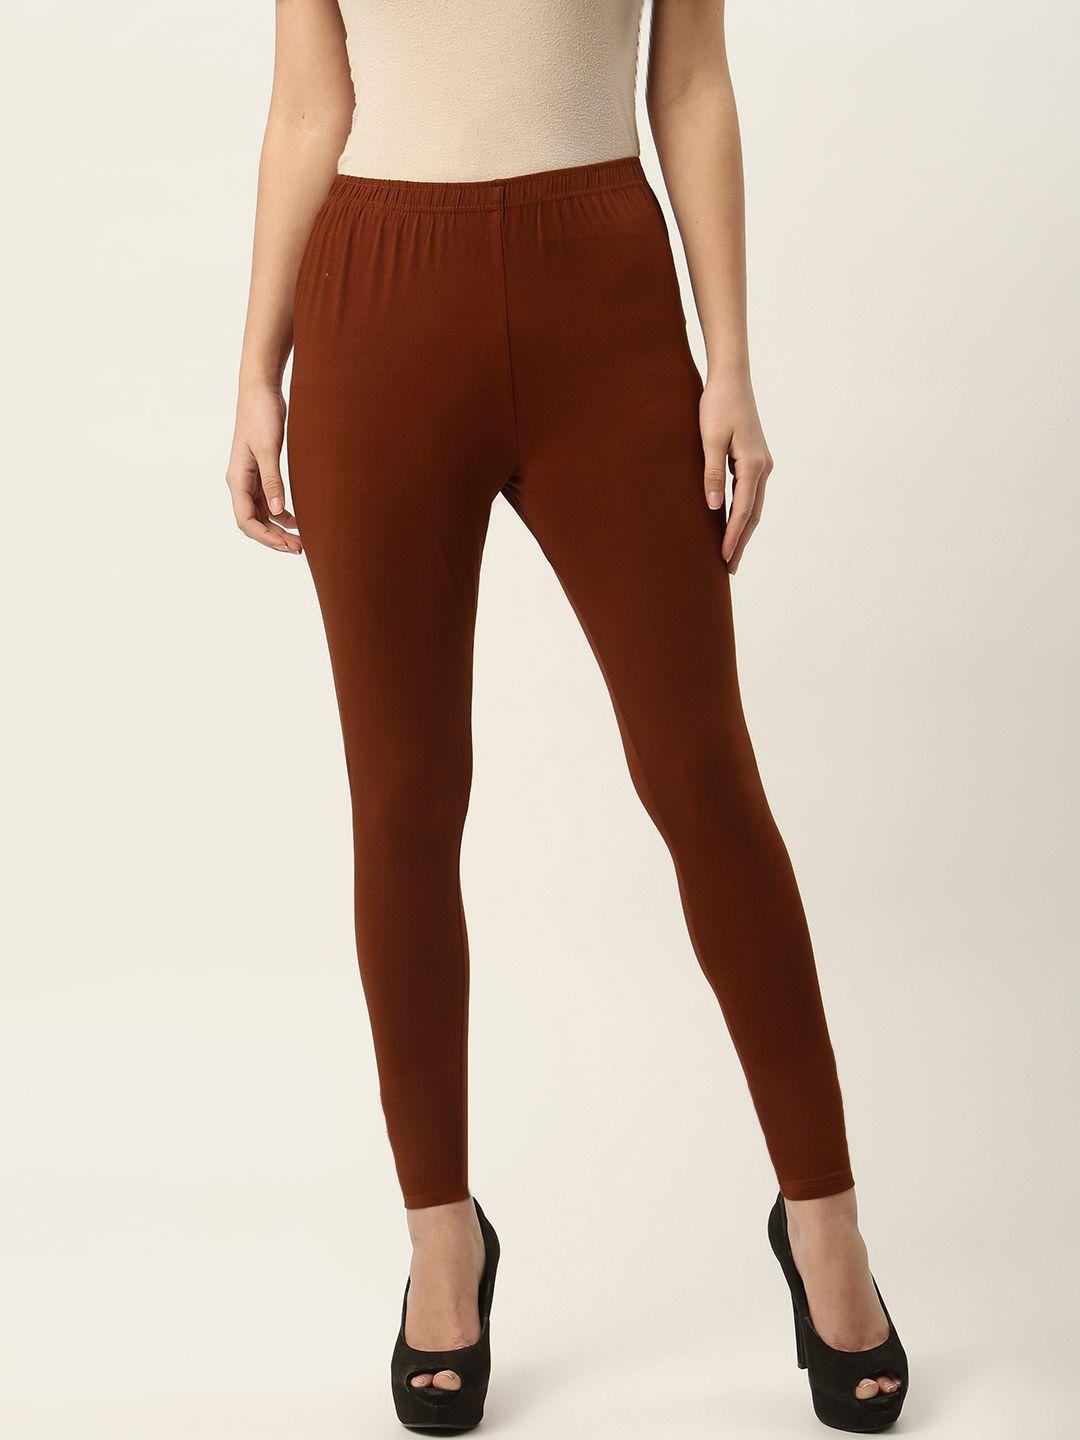 ms.lingies-women-maroon-solid-ankle-length-leggings